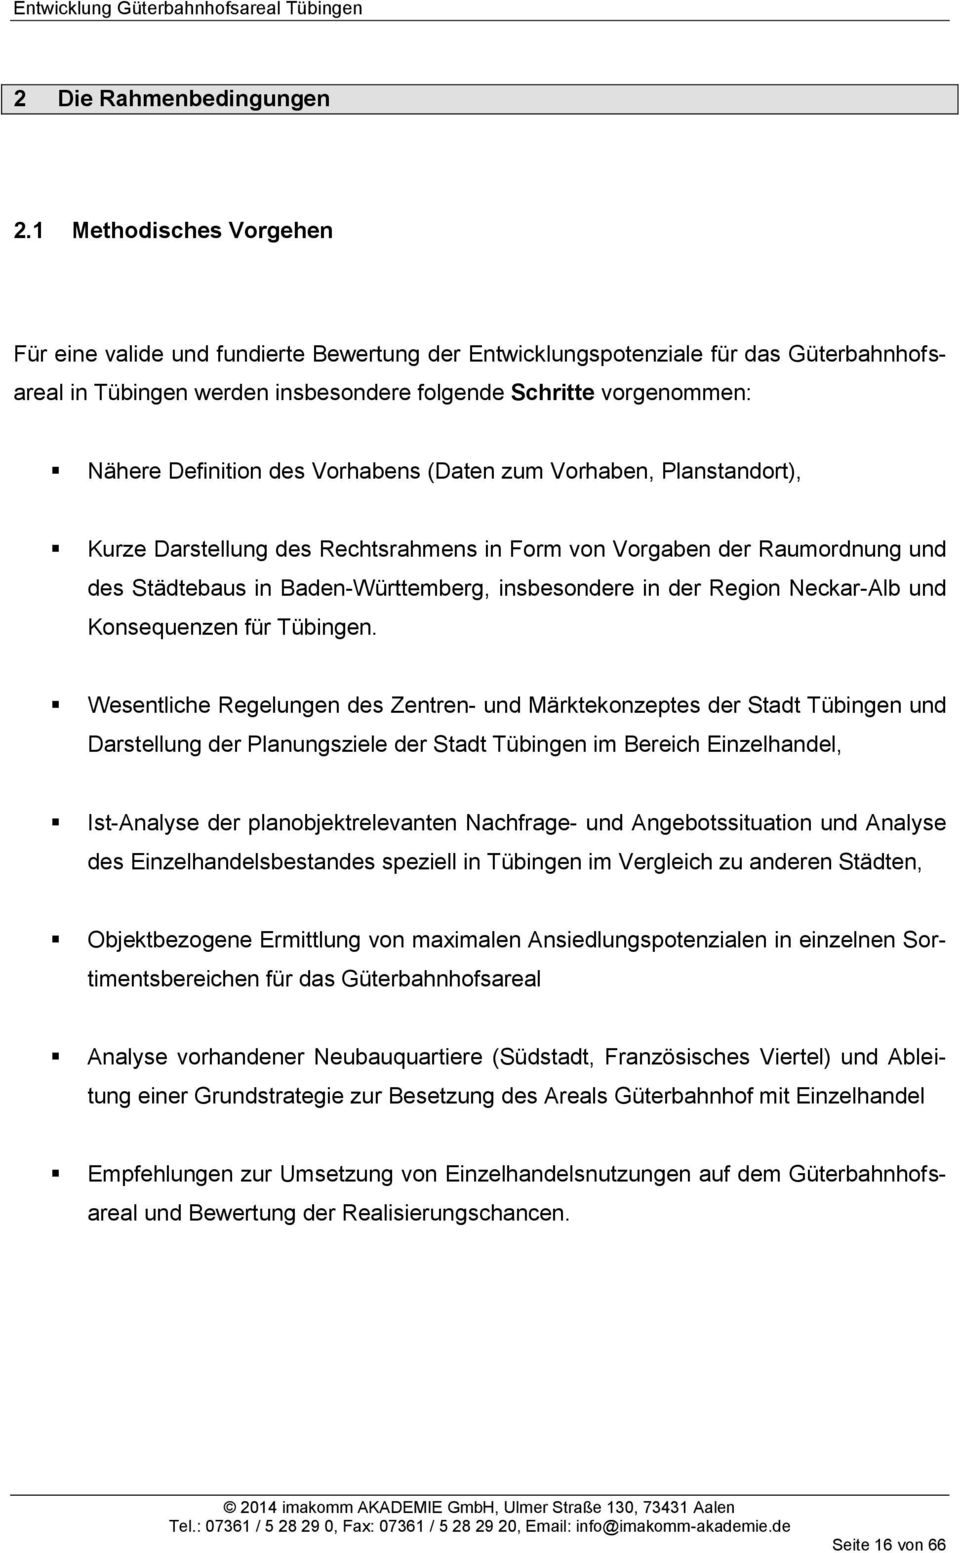 des Vorhabens (Daten zum Vorhaben, Planstandort), Kurze Darstellung des Rechtsrahmens in Form von Vorgaben der Raumordnung und des Städtebaus in Baden-Württemberg, insbesondere in der Region